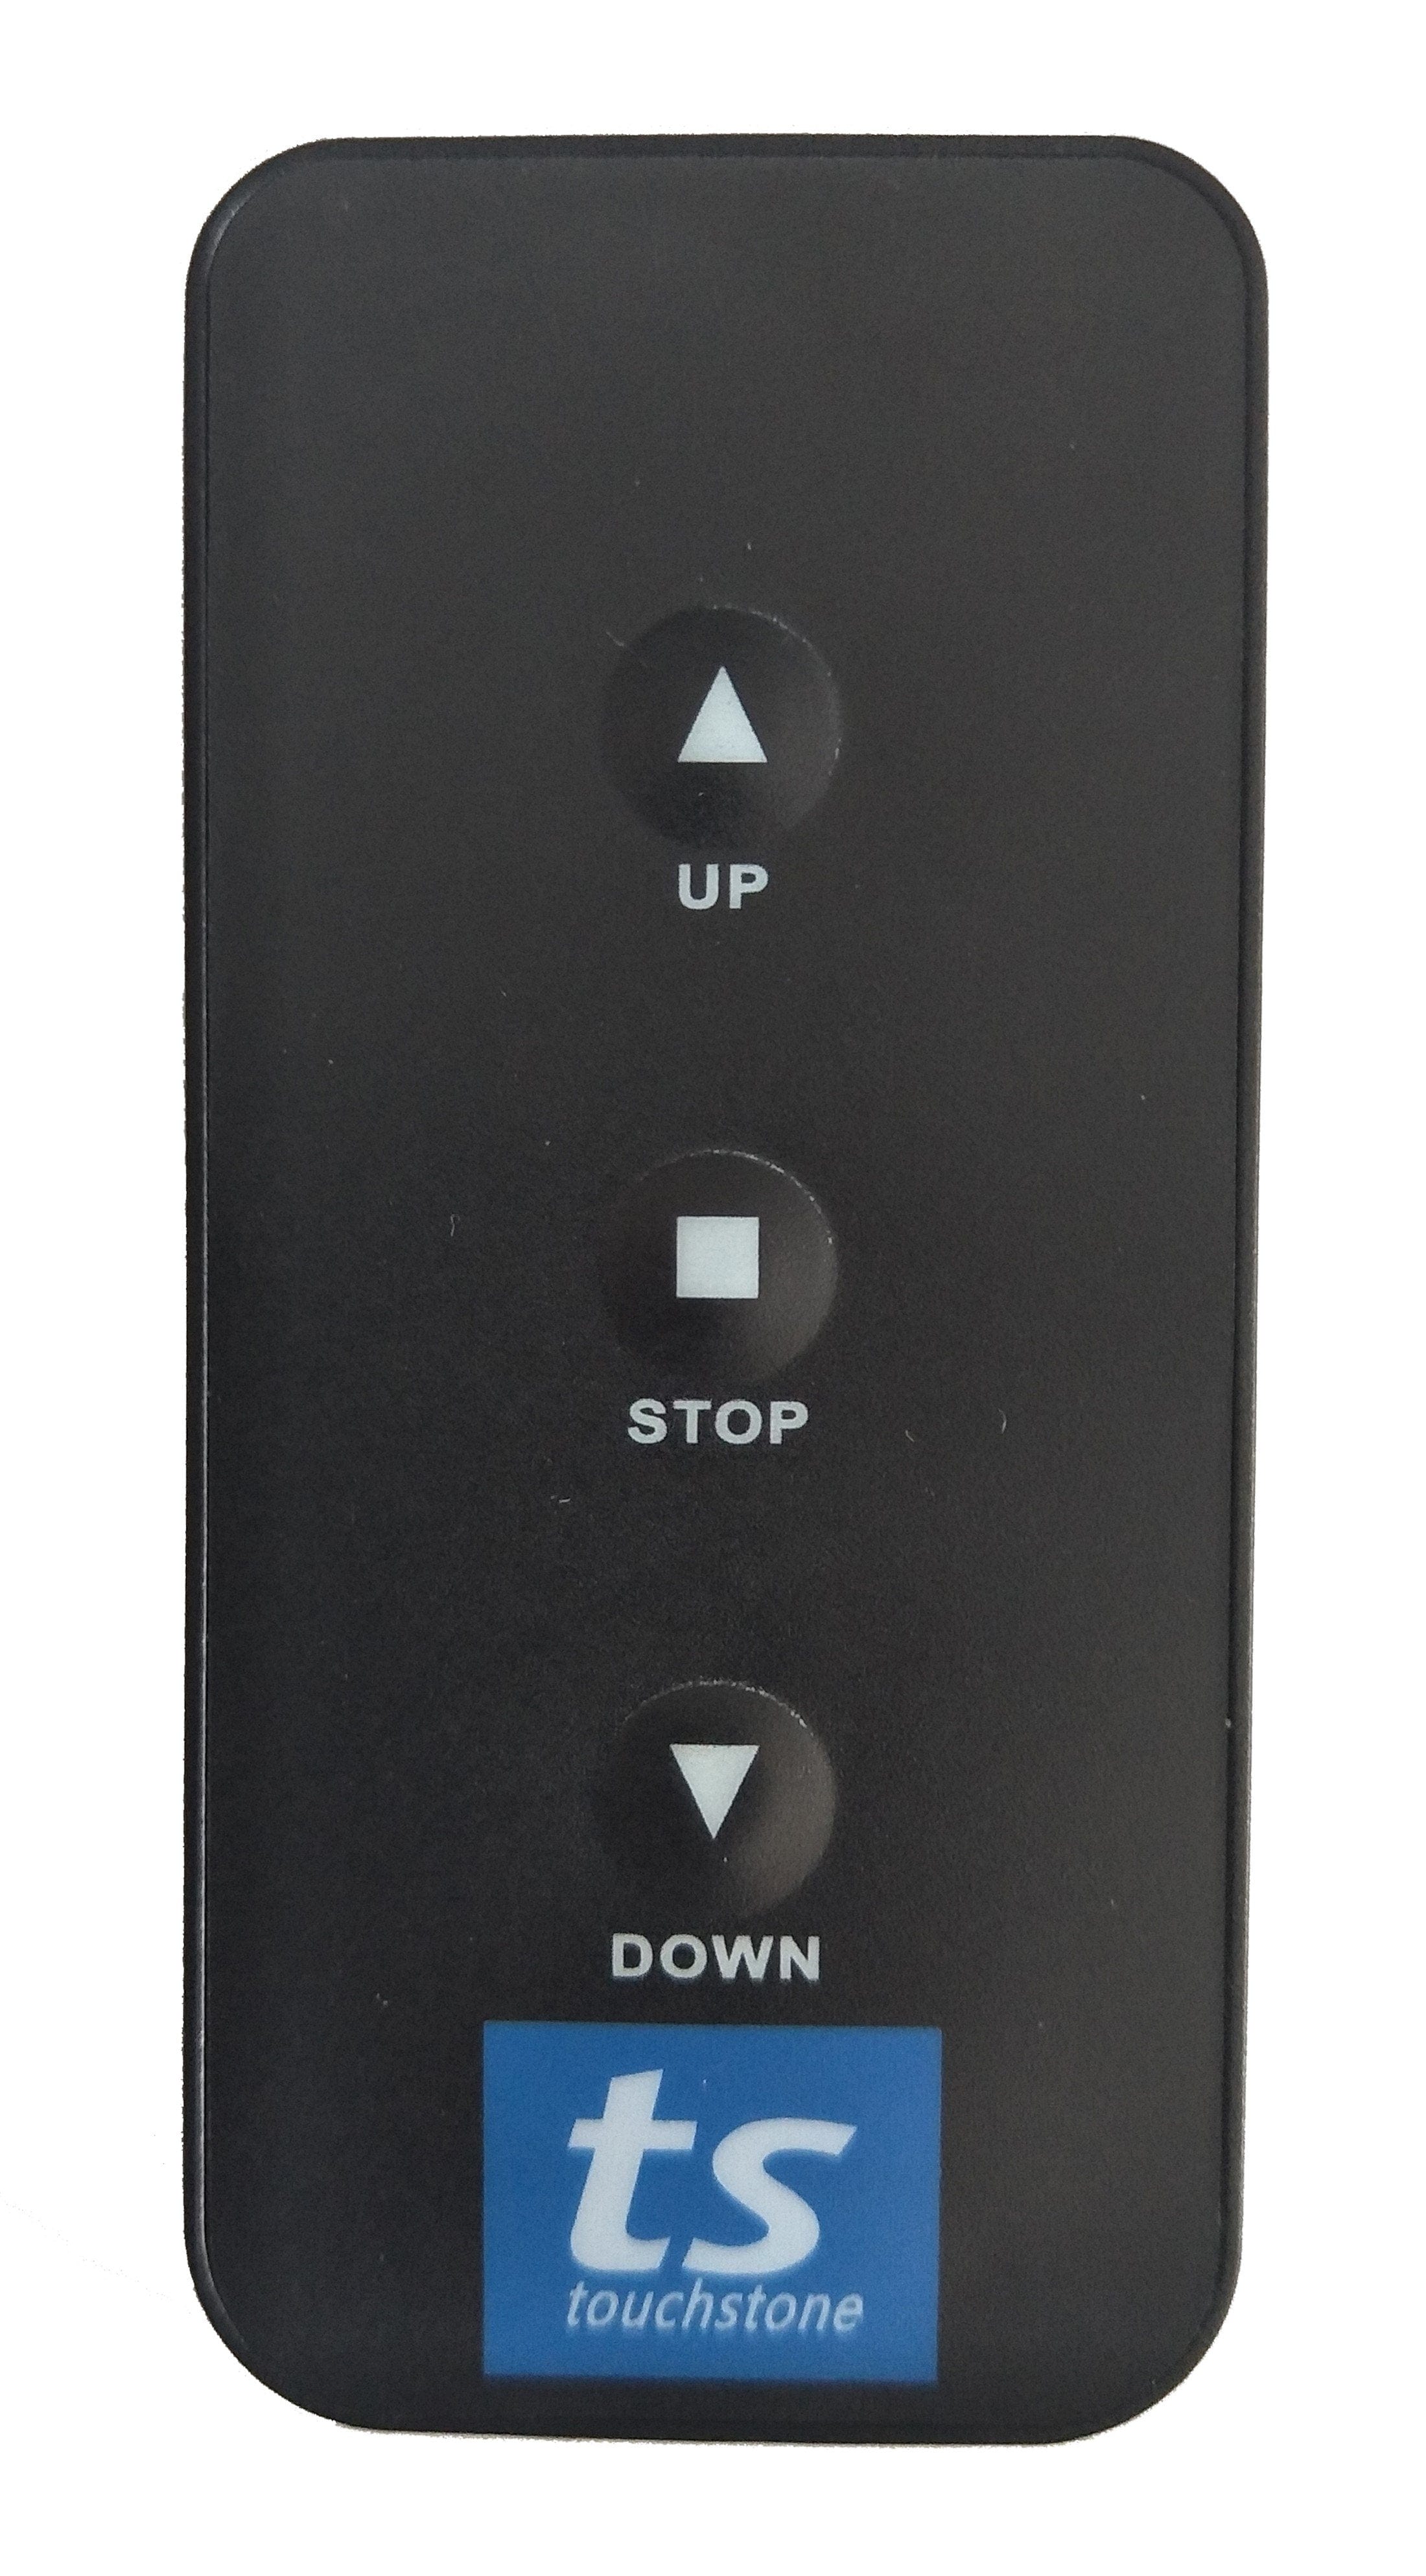 The Touchstone SRV Pro TV Lift remote control.